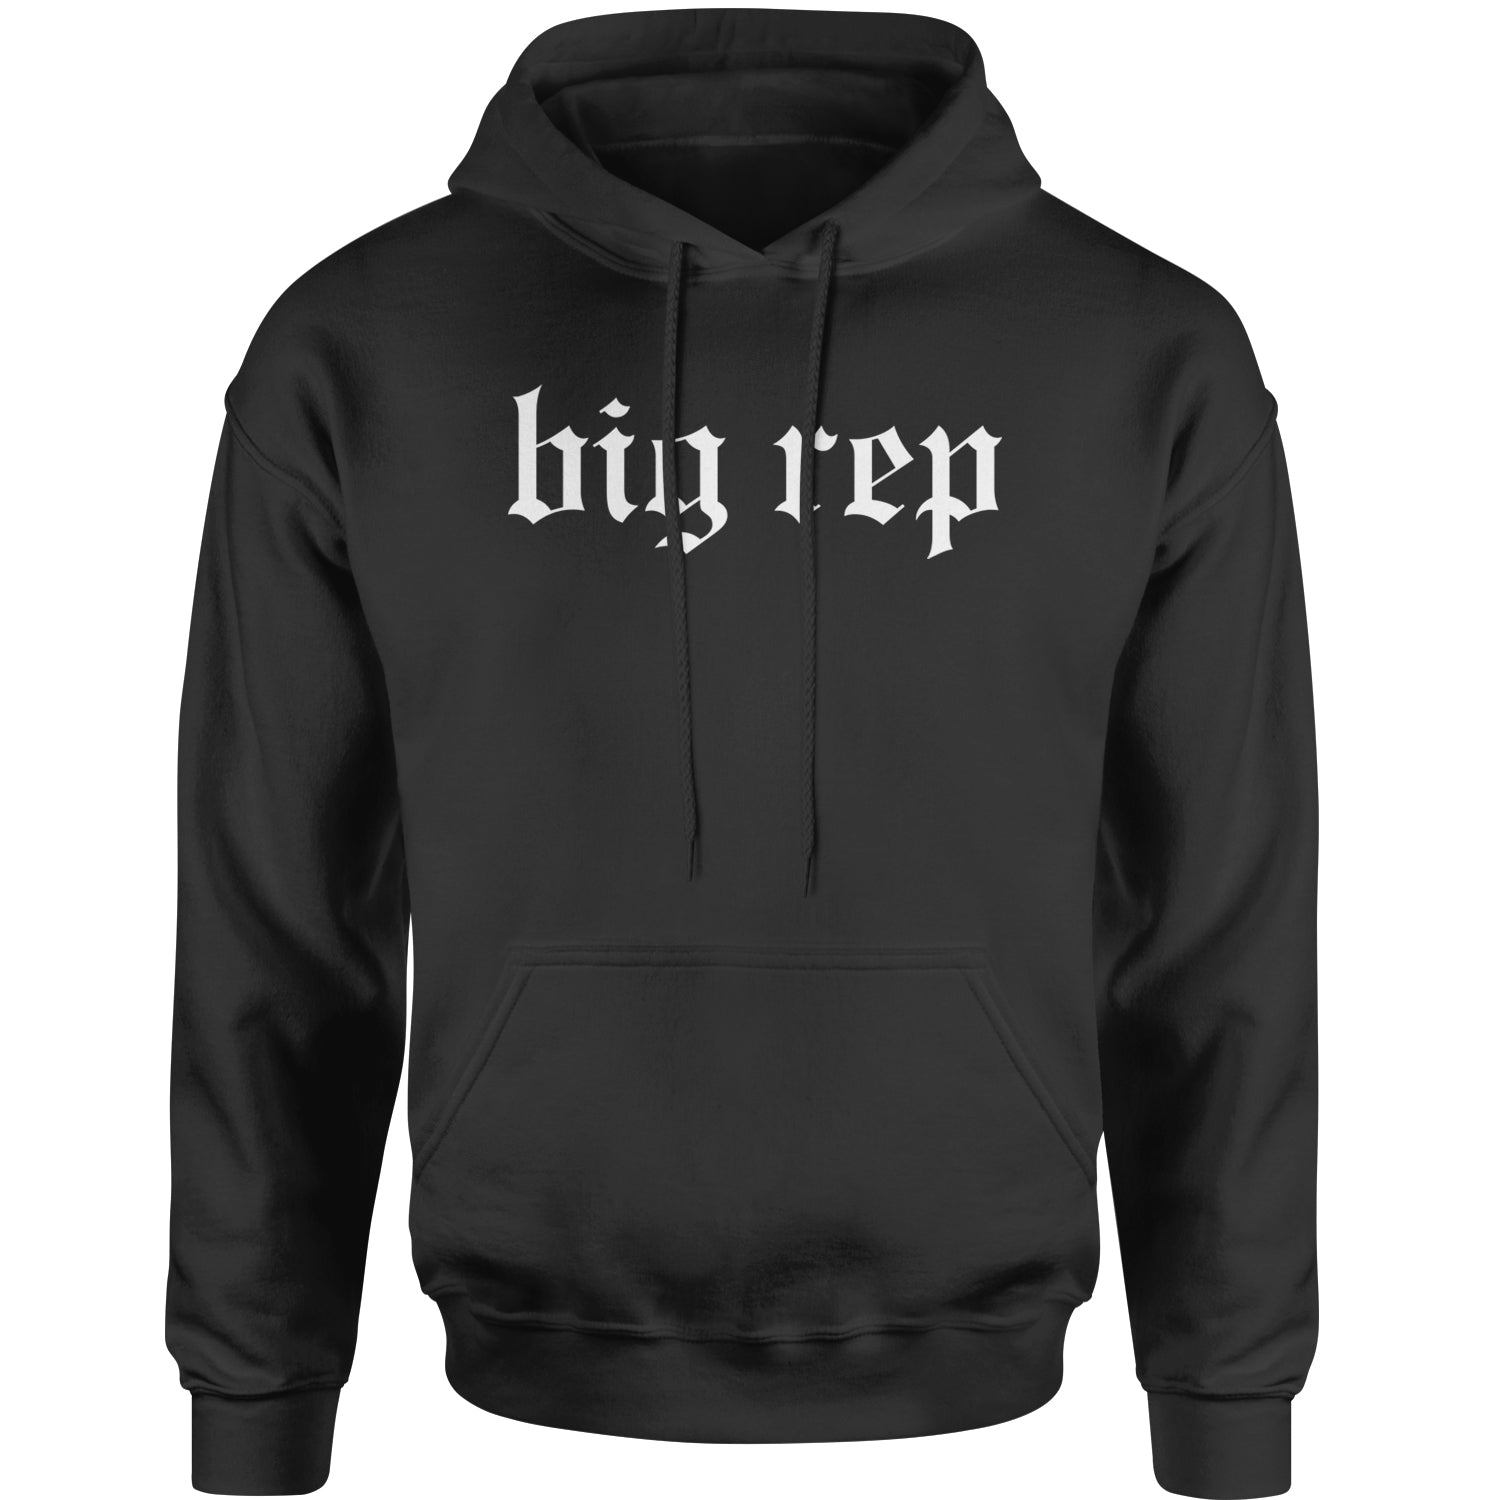 Big Rep Reputation Adult Hoodie Sweatshirt